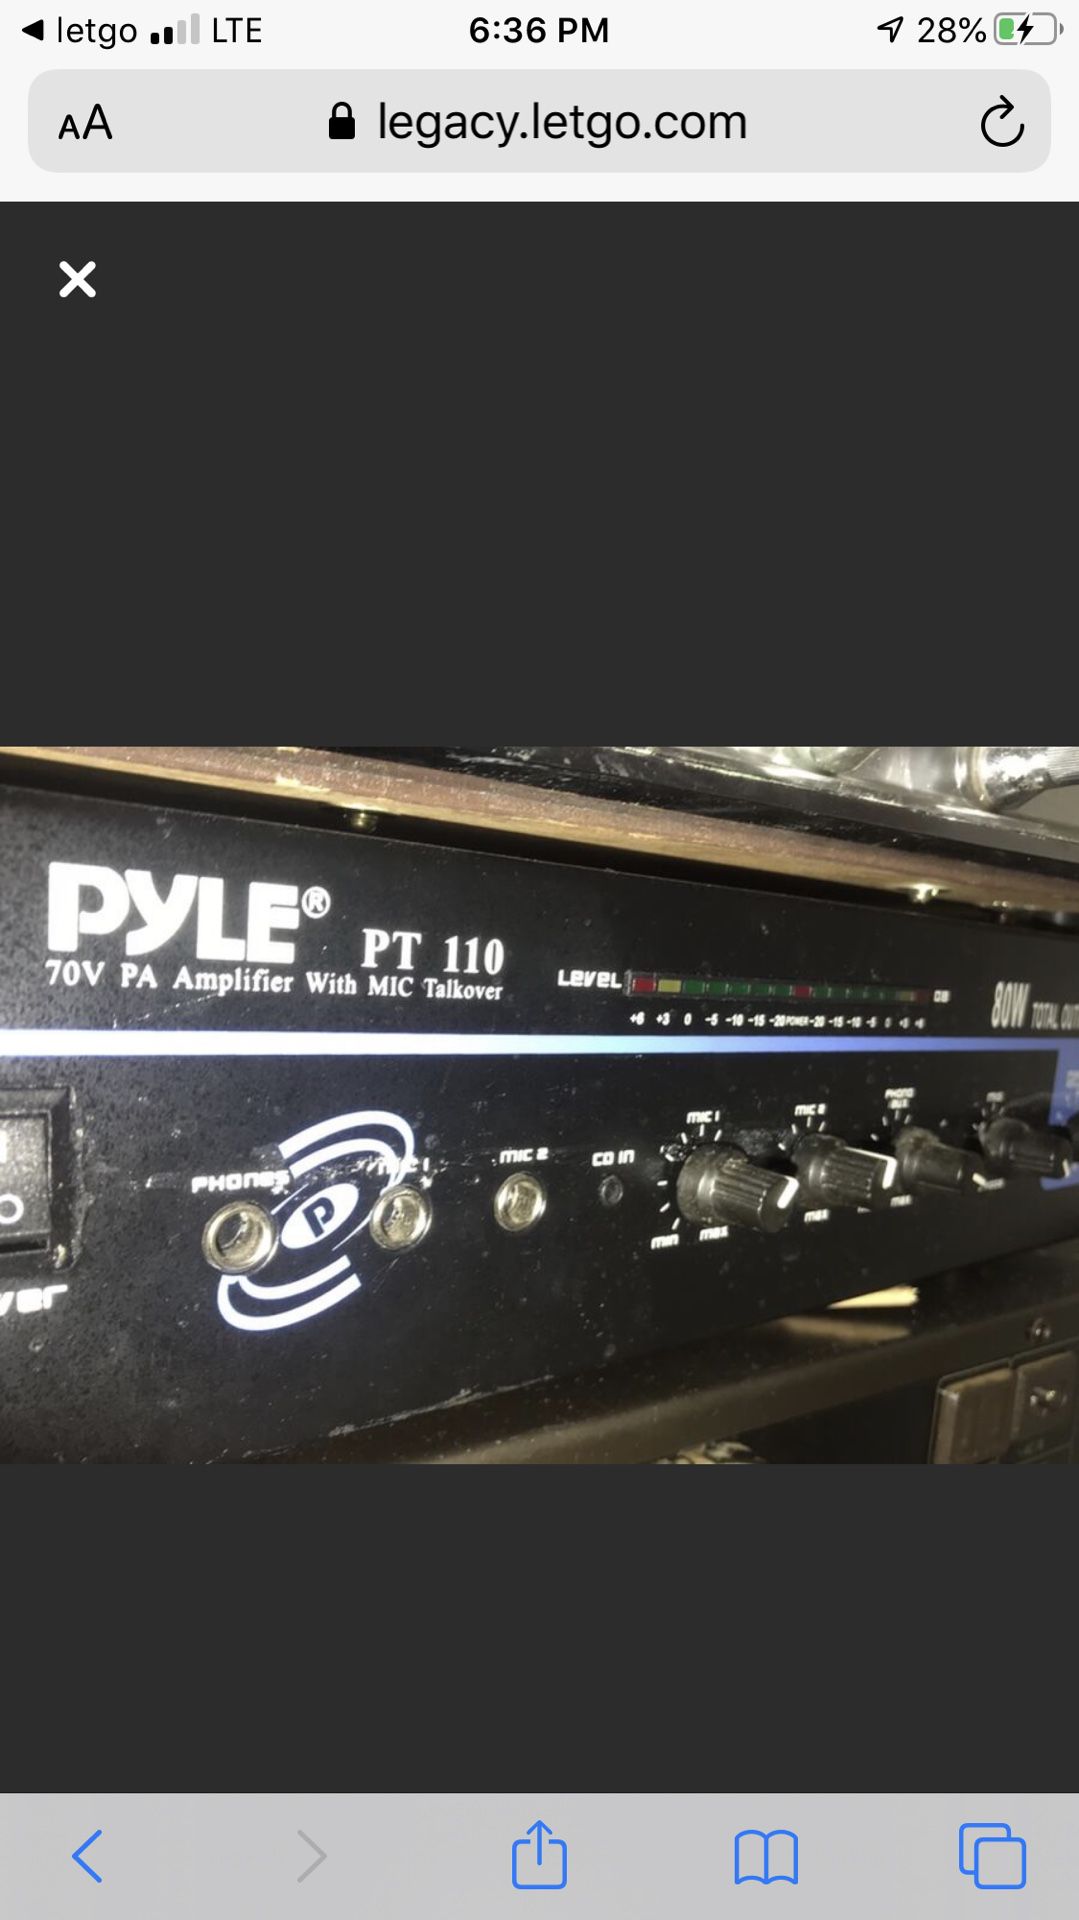 Pre amplifier “Pyle “ pt 110